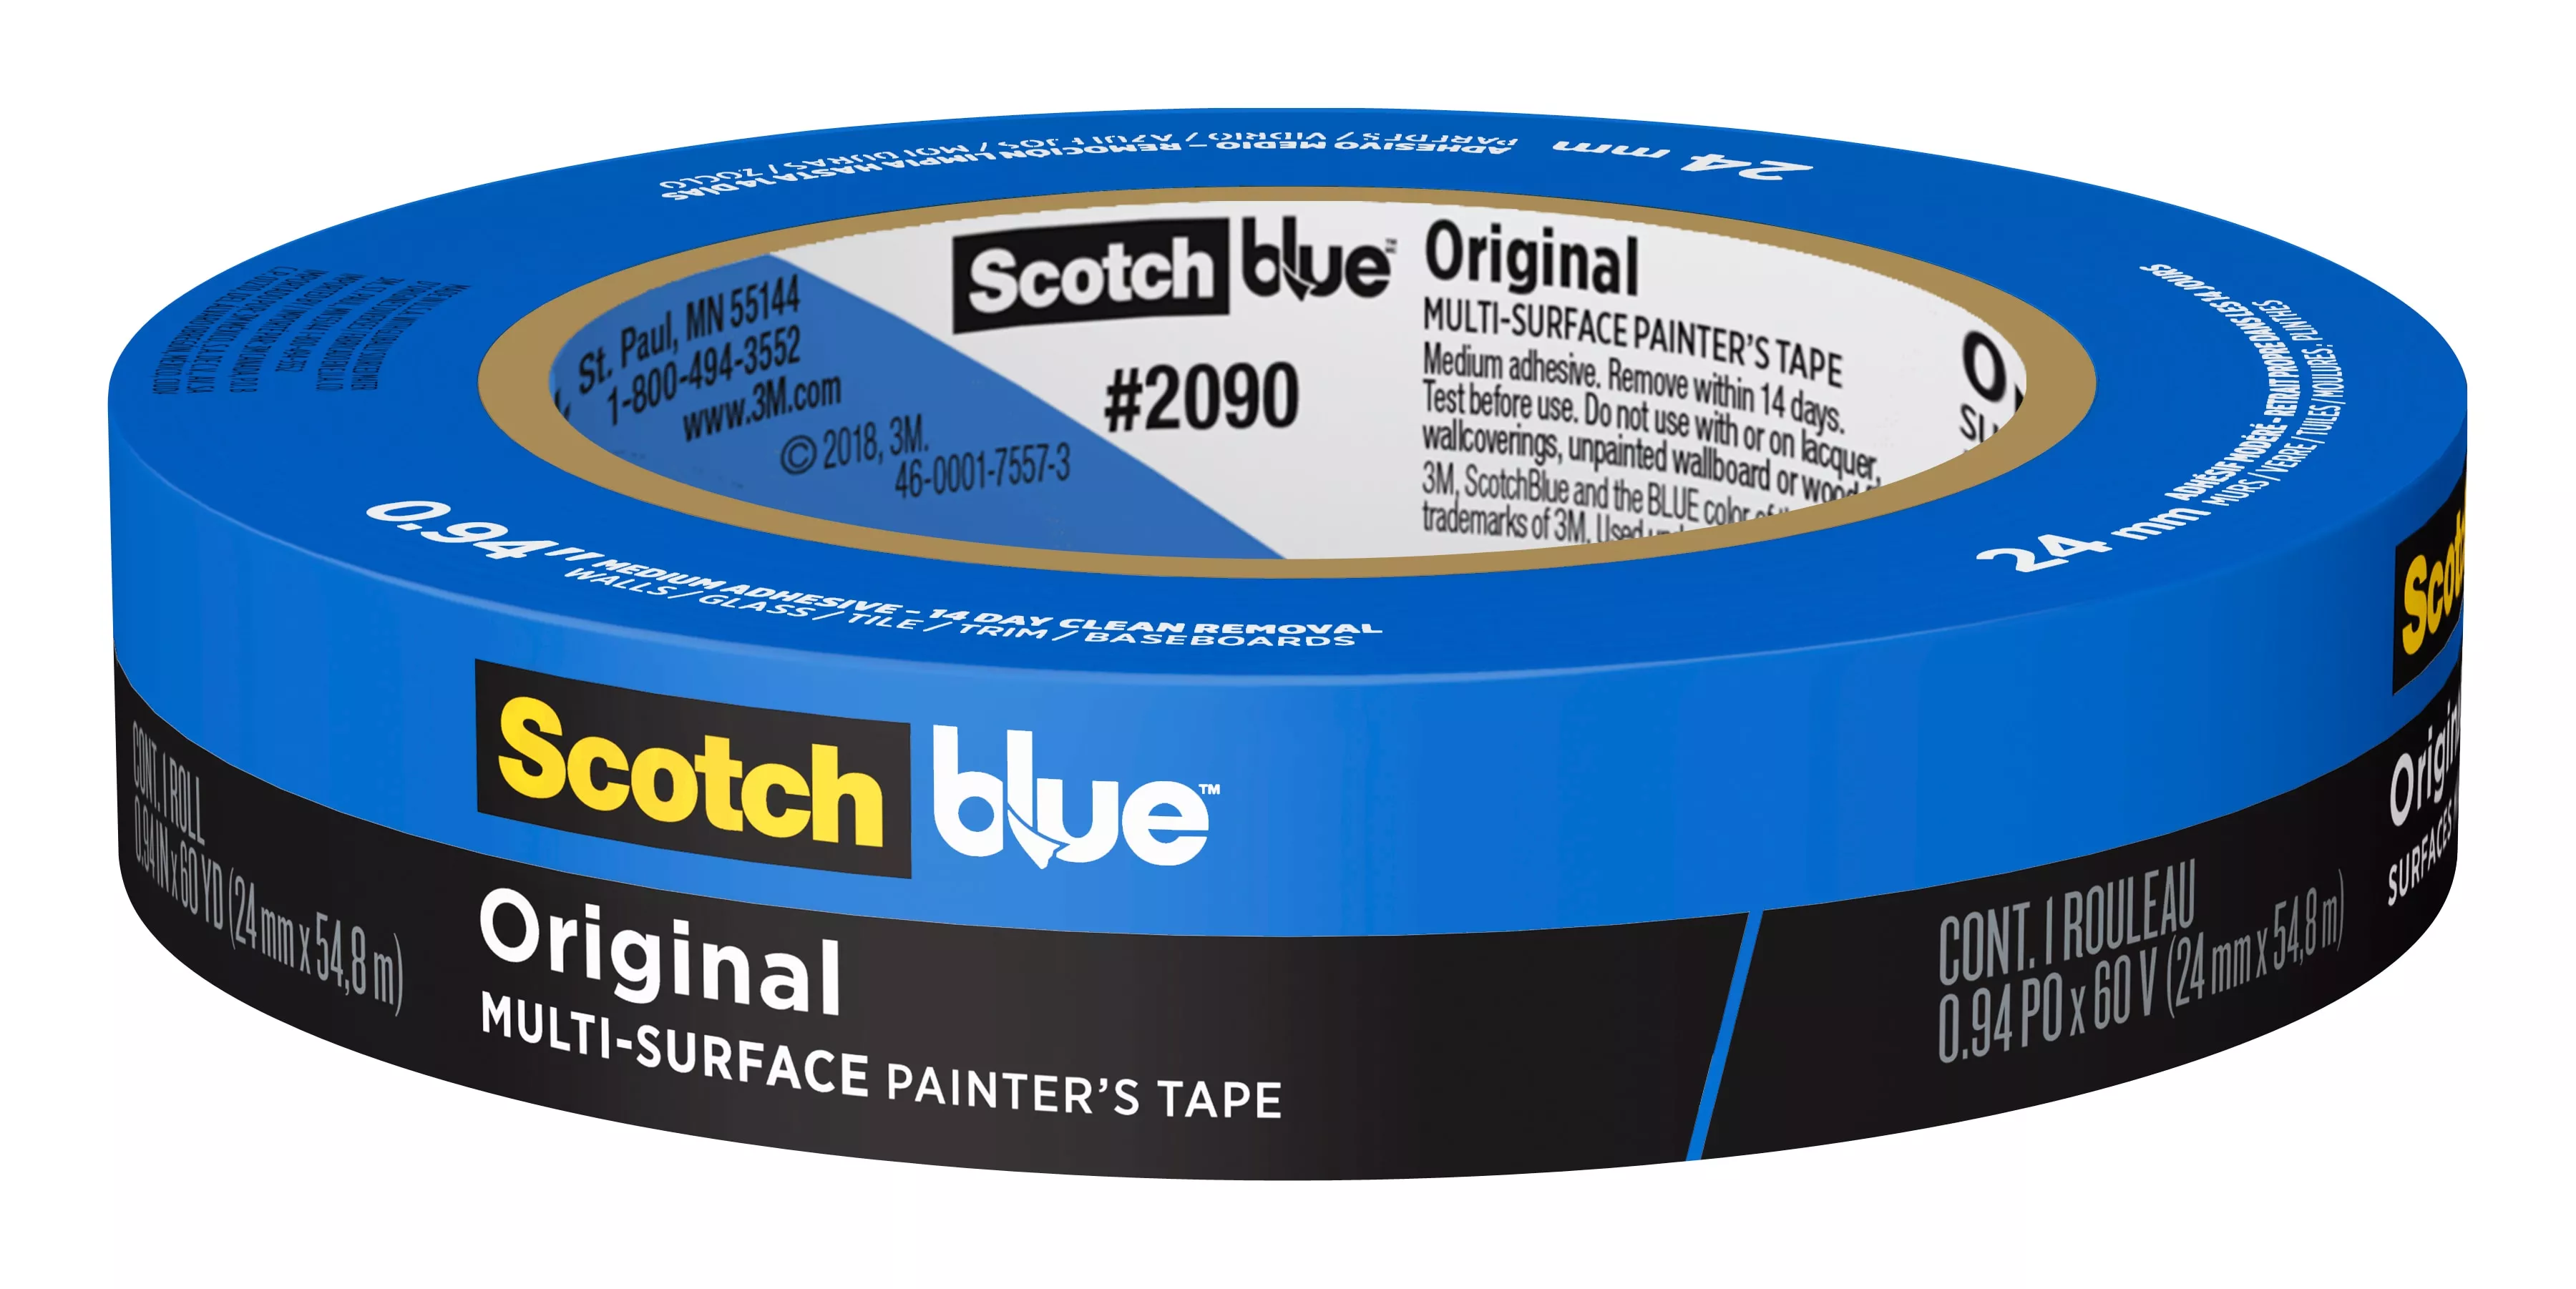 SKU 7100186979 | ScotchBlue™ Original Painter's Tape 2090-24EC